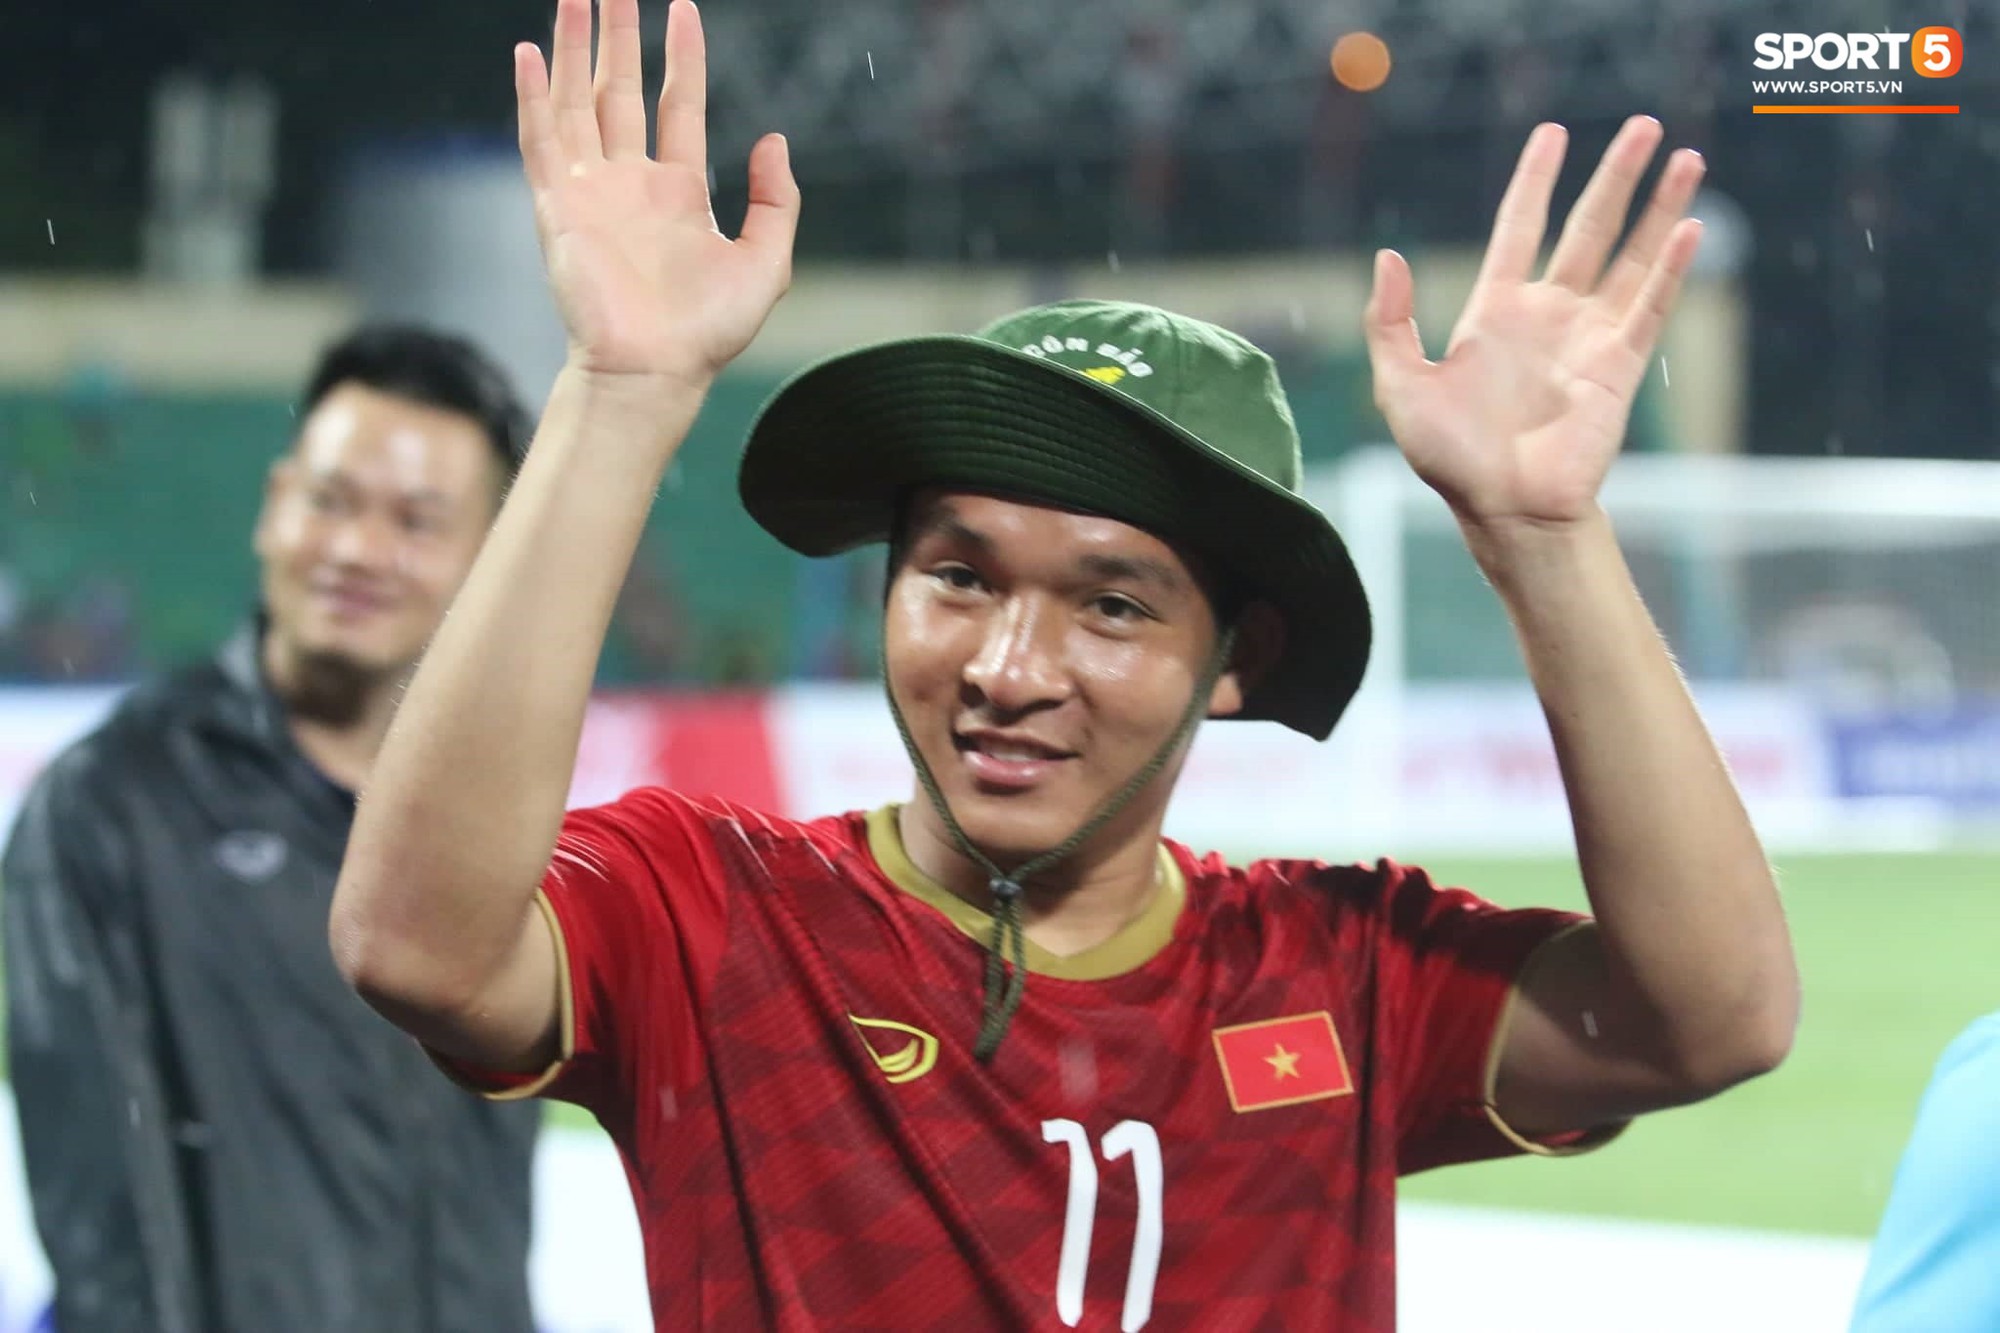 U23 Việt Nam đội mưa đi khắp khán đài cảm ơn người hâm mộ sau trận thắng U23 Myanmar - Ảnh 8.